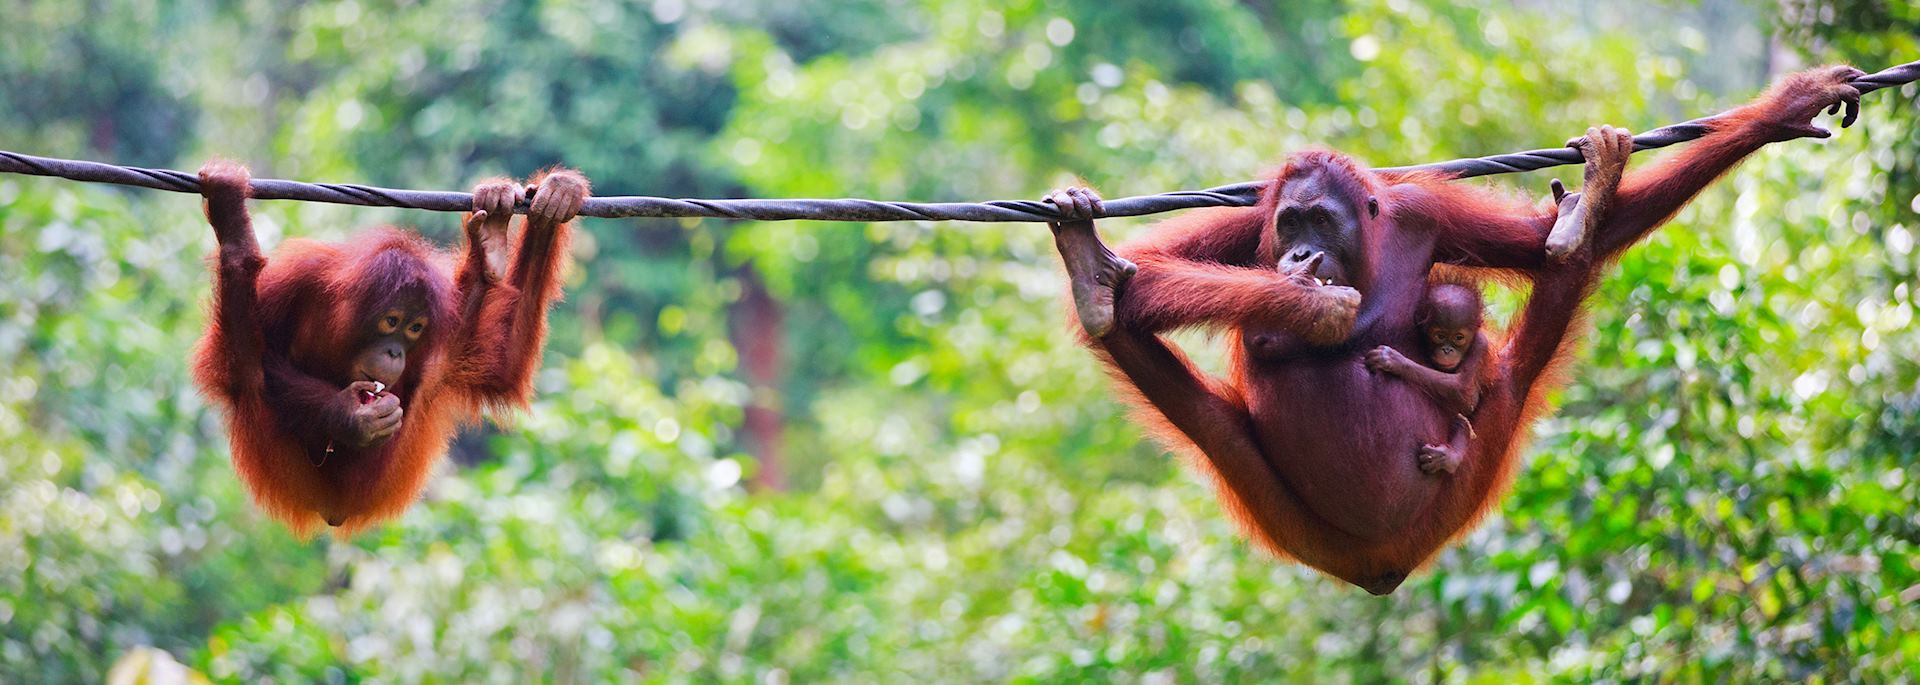 Orangutans in Sabah